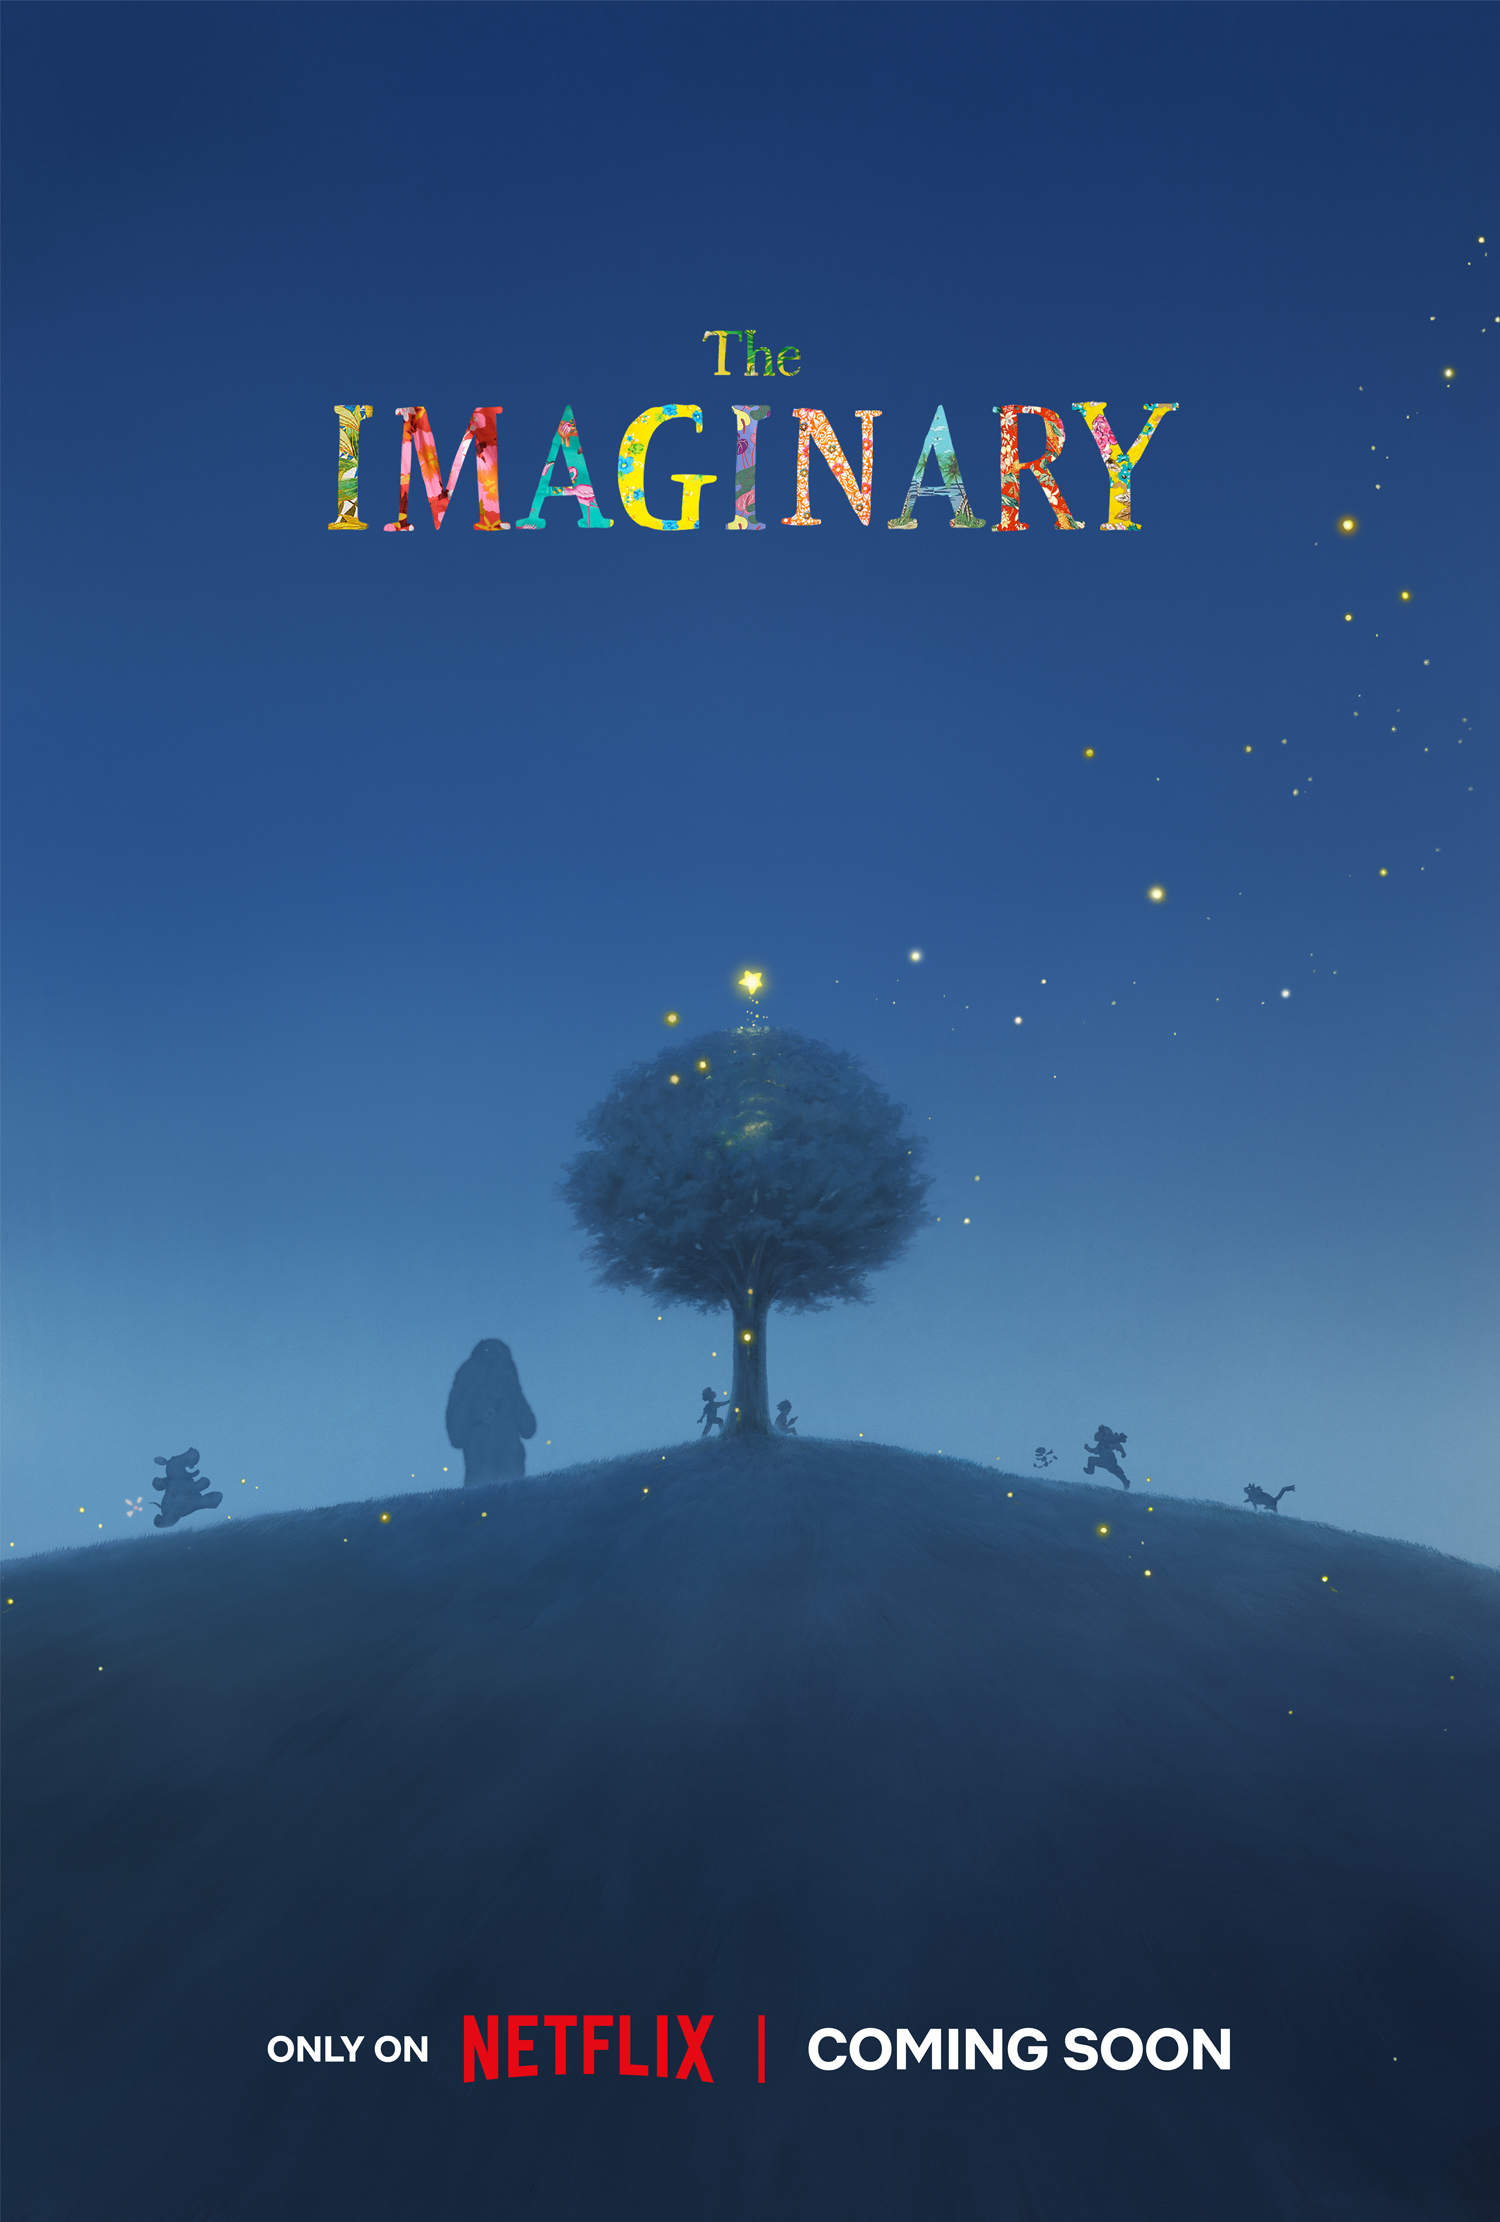 The Imaginary | Filme do Studio Ponoc tem estreia marcada na Netflix